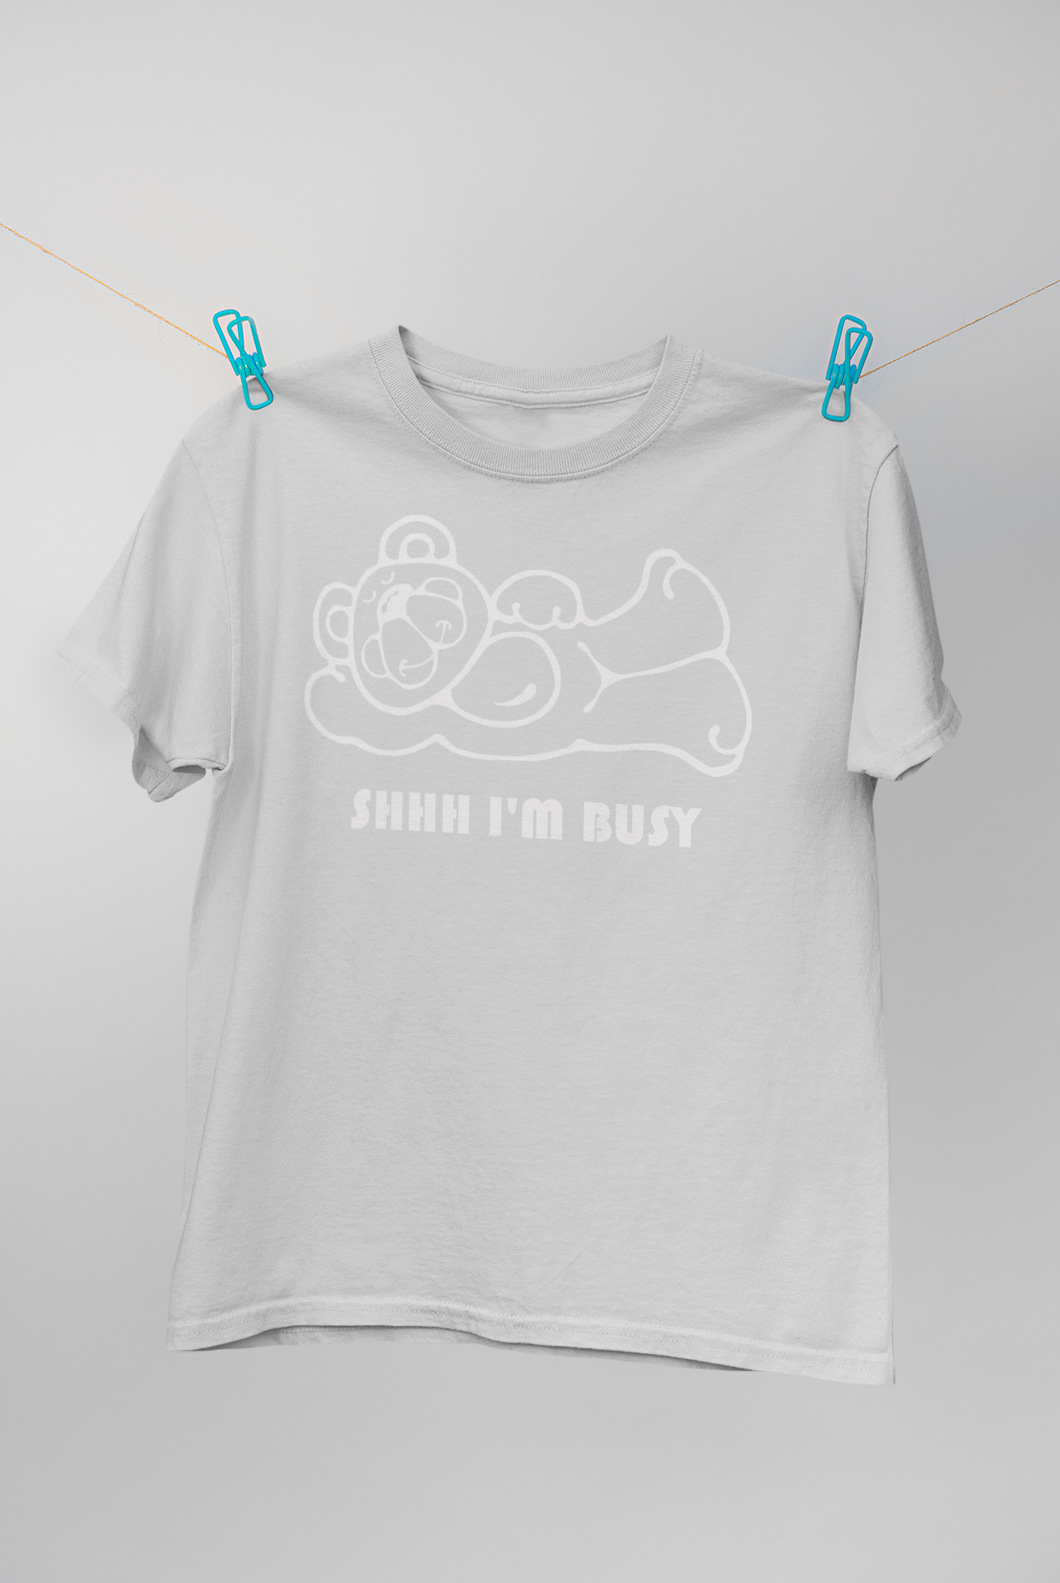 Shhh I'm Busy (Man T-shirt)